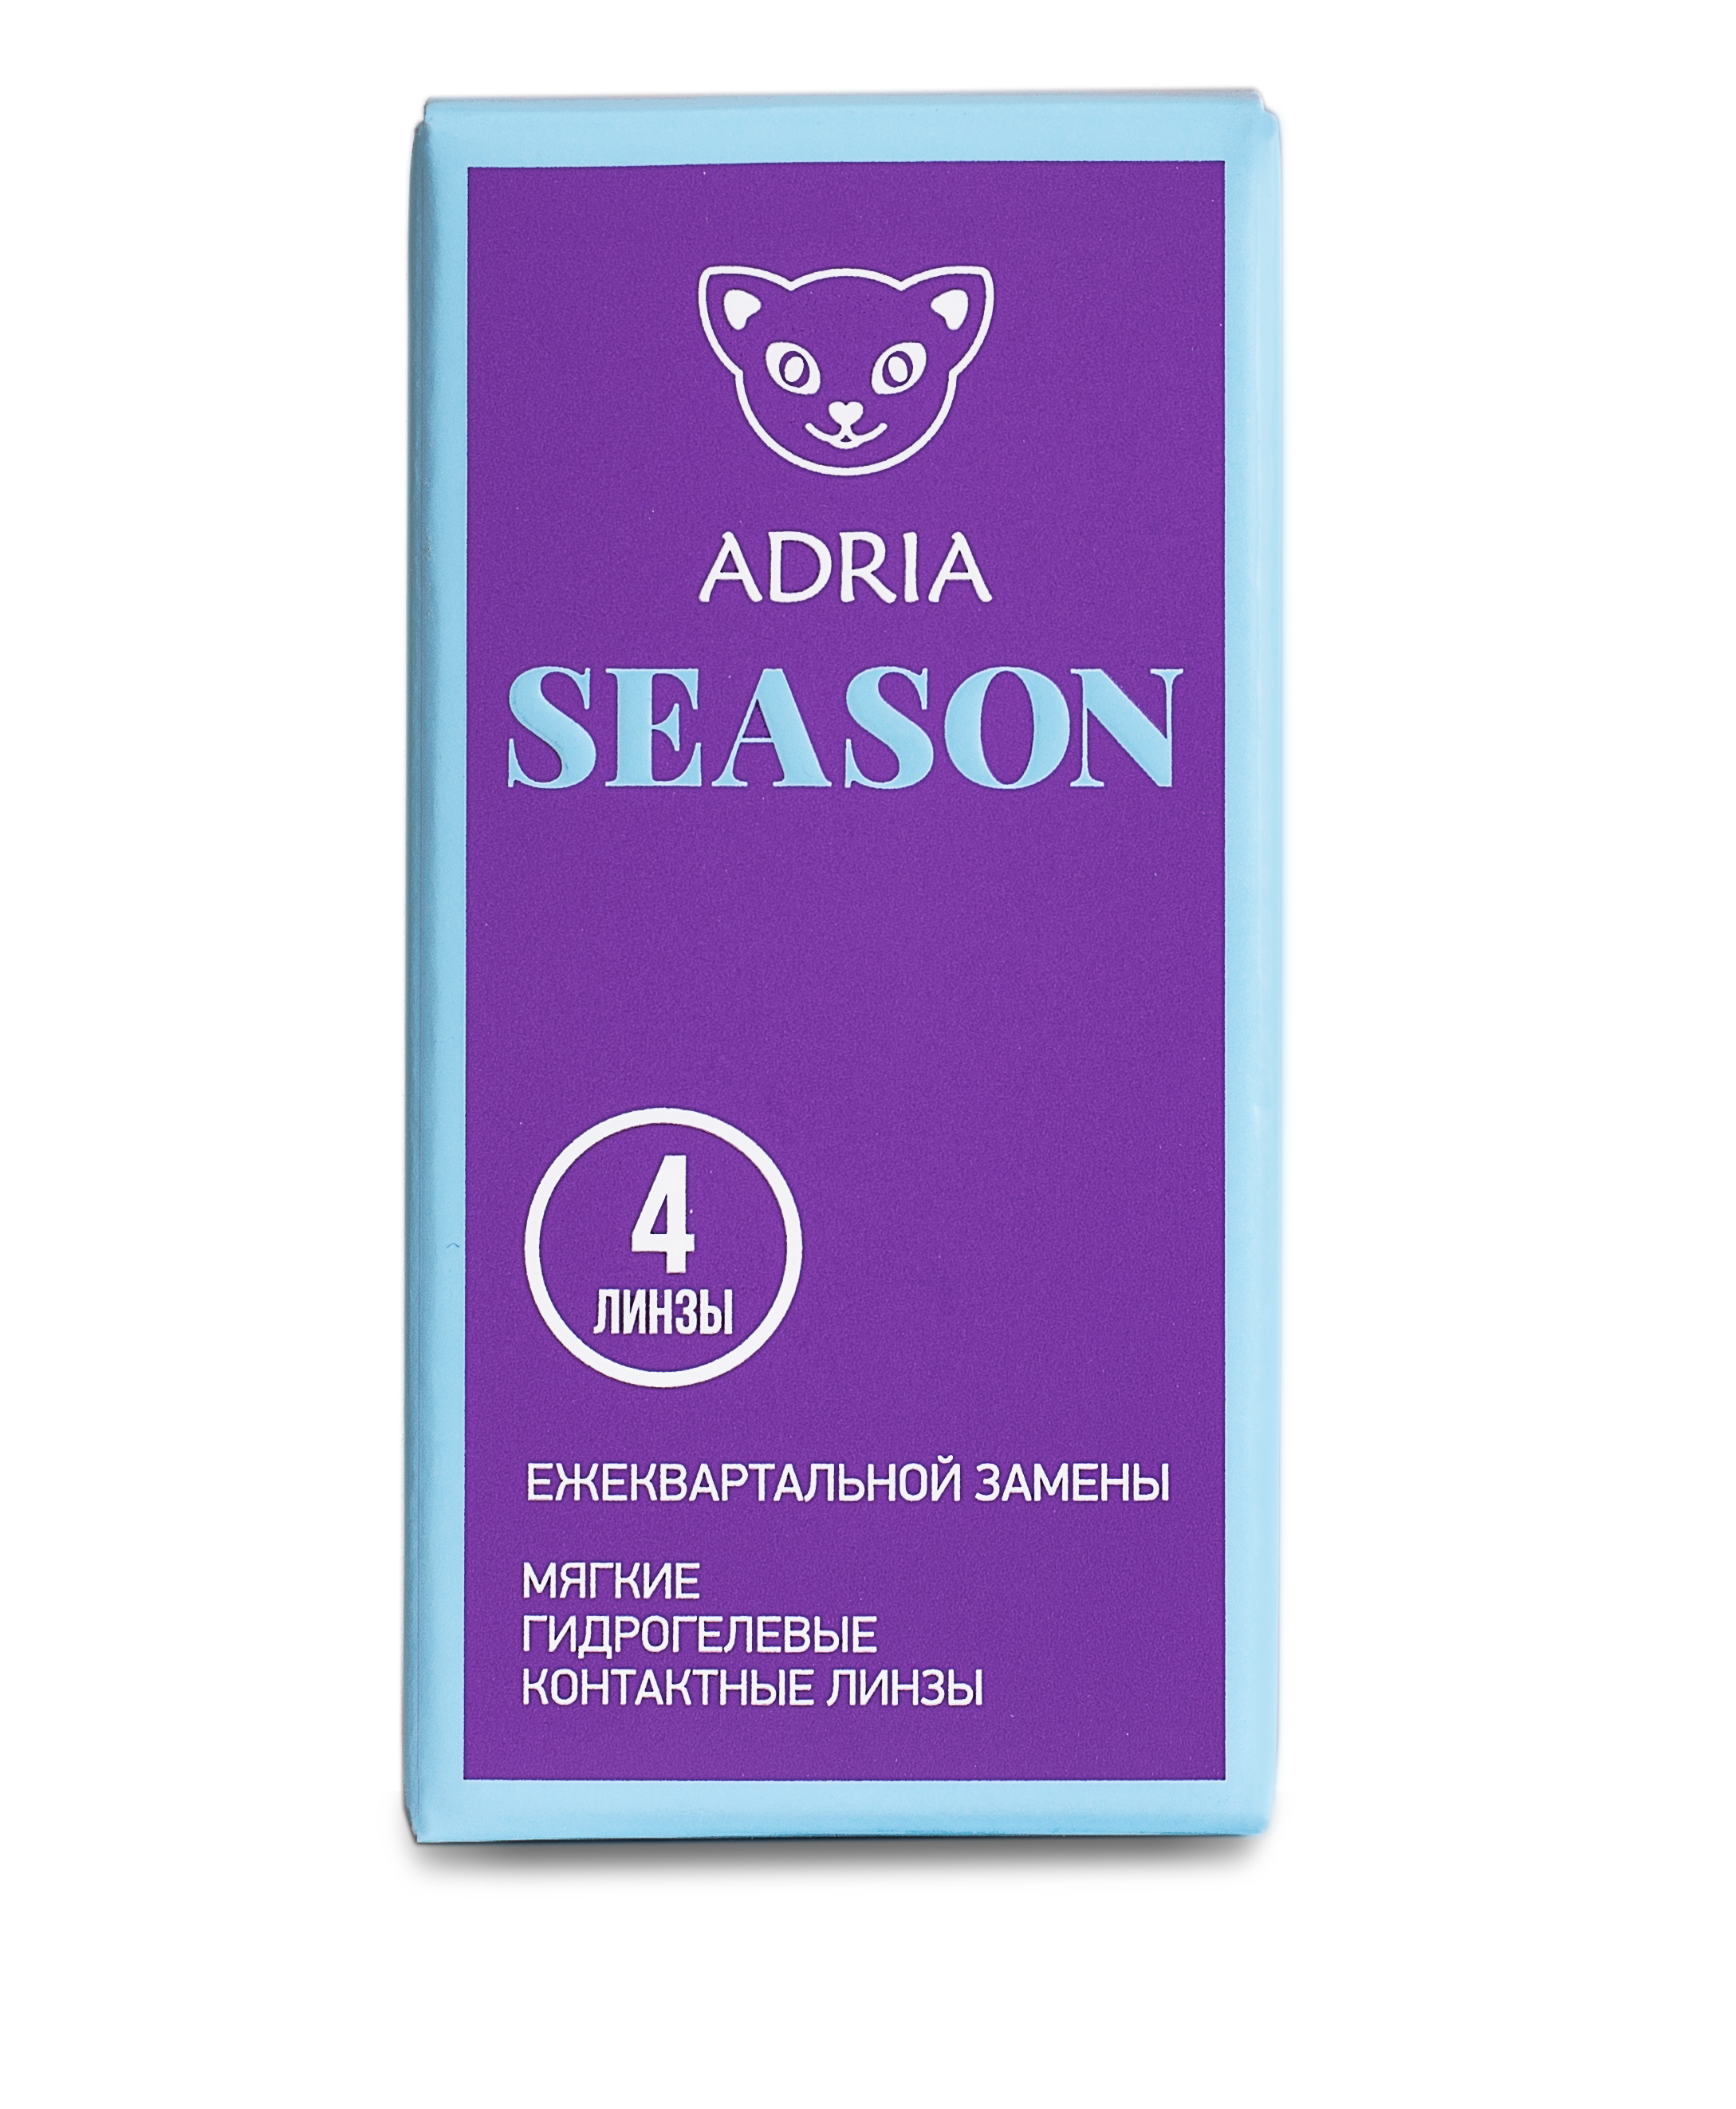 Купить Morning Q38 Adria Season 4 линзы, Контактные линзы ADRIA SEASON 4 линзы R 8, 6 SPH -14, 50